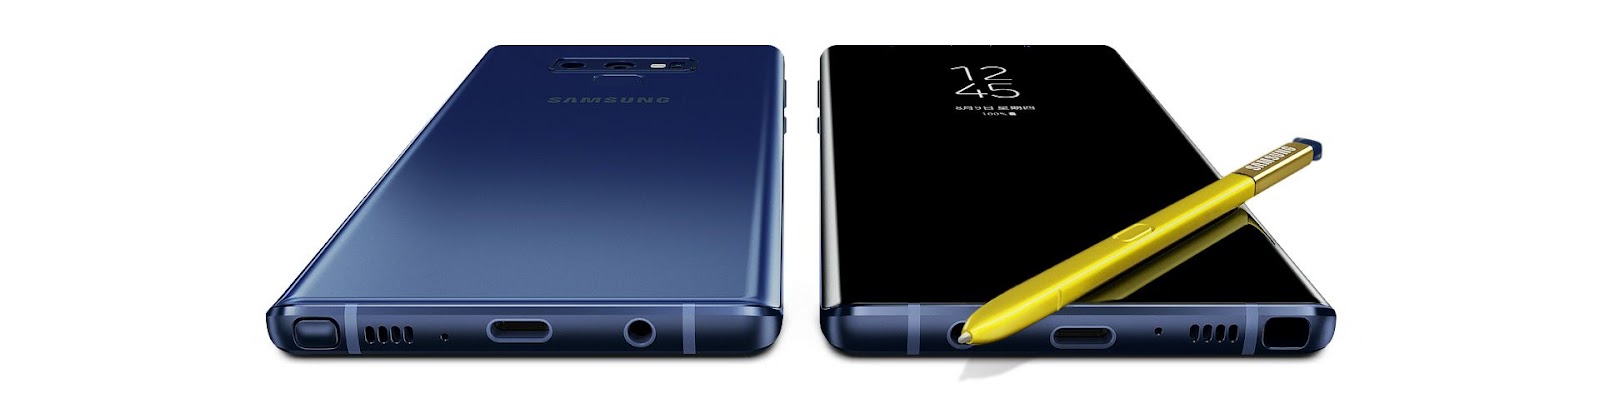 兩台Galaxy Note9一正一反，S Pen置於螢幕上